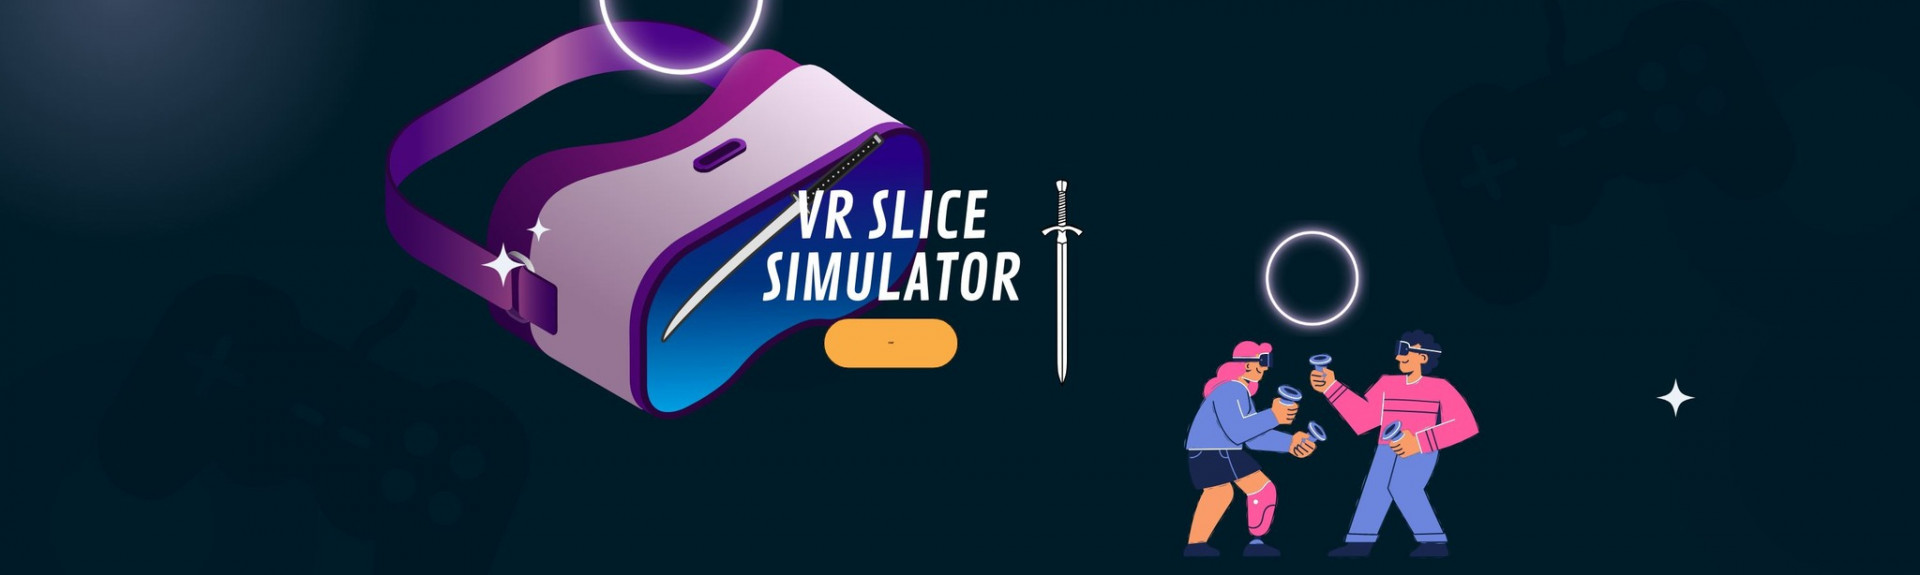 VR Slice Simulator Rift